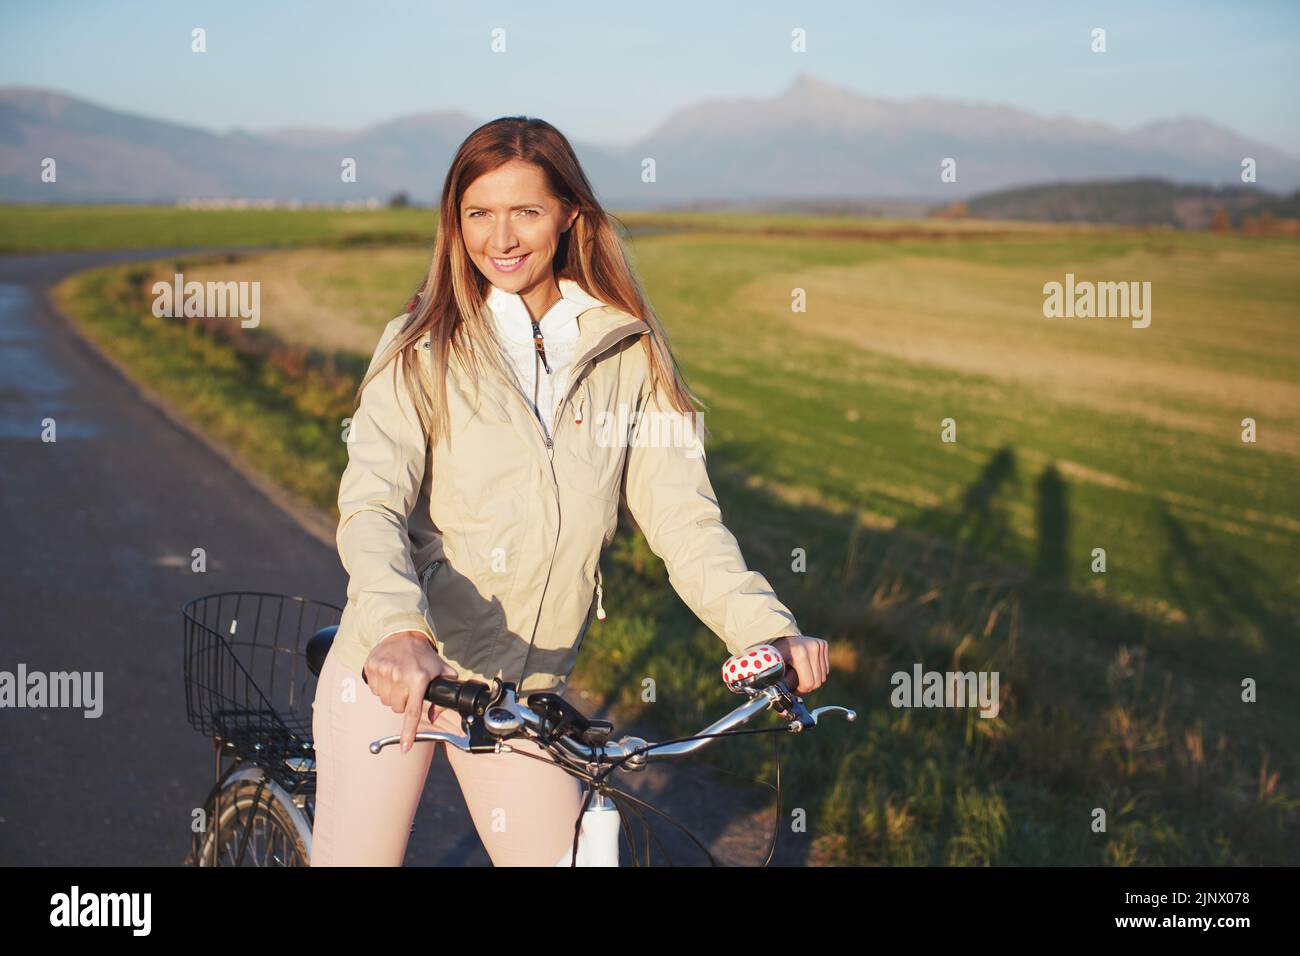 Junge Frau in Jacke steht mit dem Fahrrad auf Asphalt Landstraße, Nachmittag Sonne scheint auf Feldern Wiesen und Berge Hintergrund Stockfoto